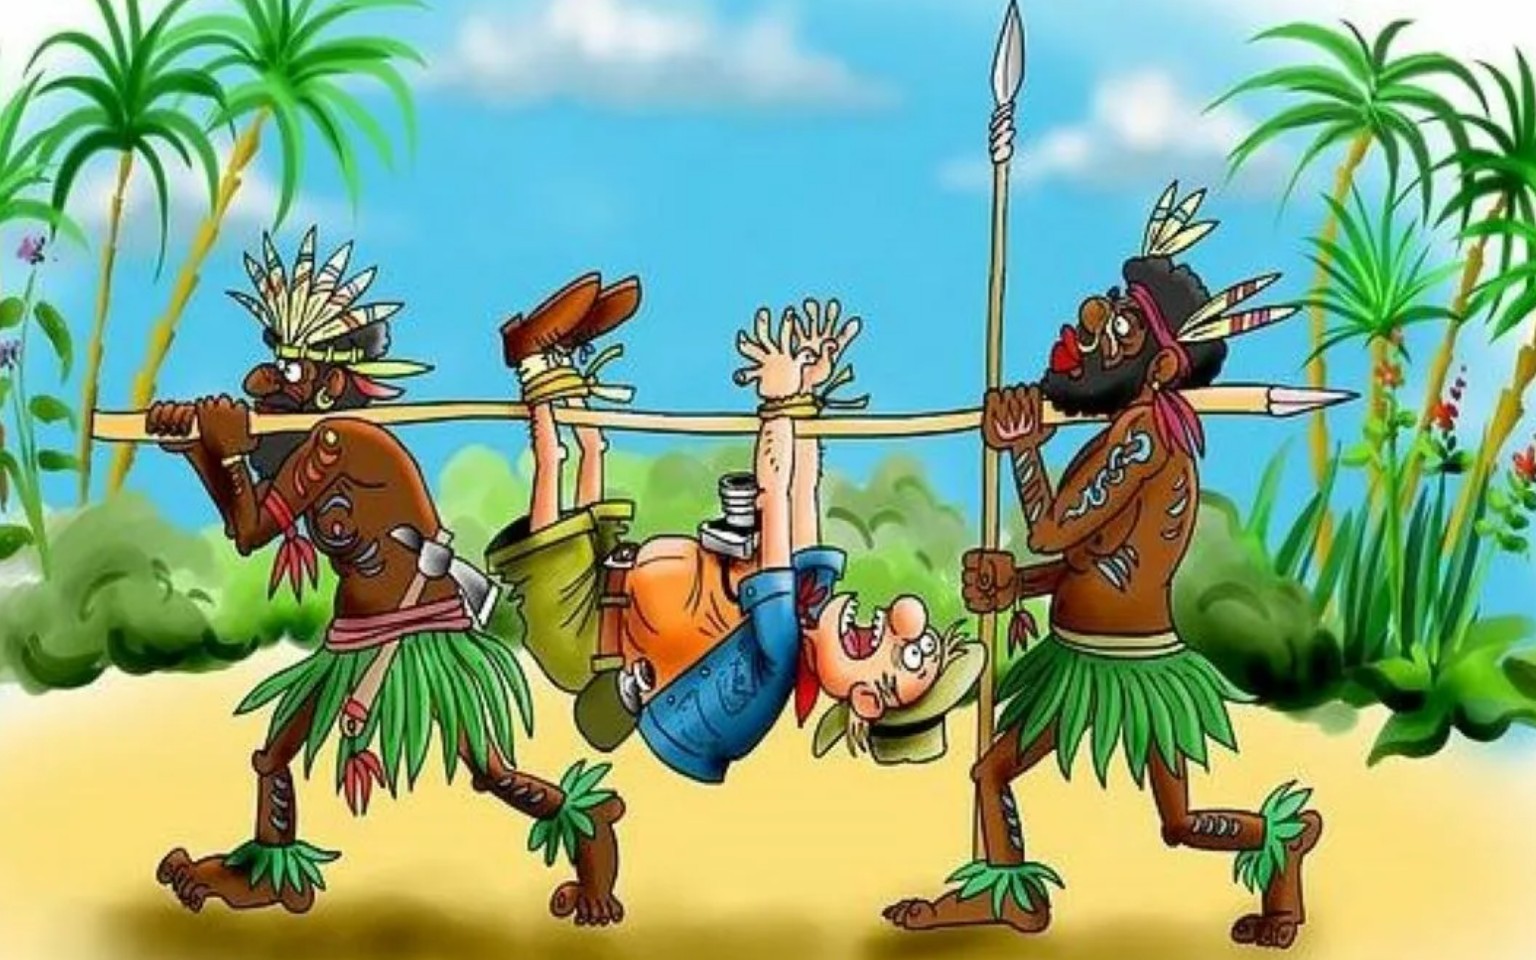 Имя тупого людоеда. Карикатуры про аборигенов. Папуасы новой Гвинеи.